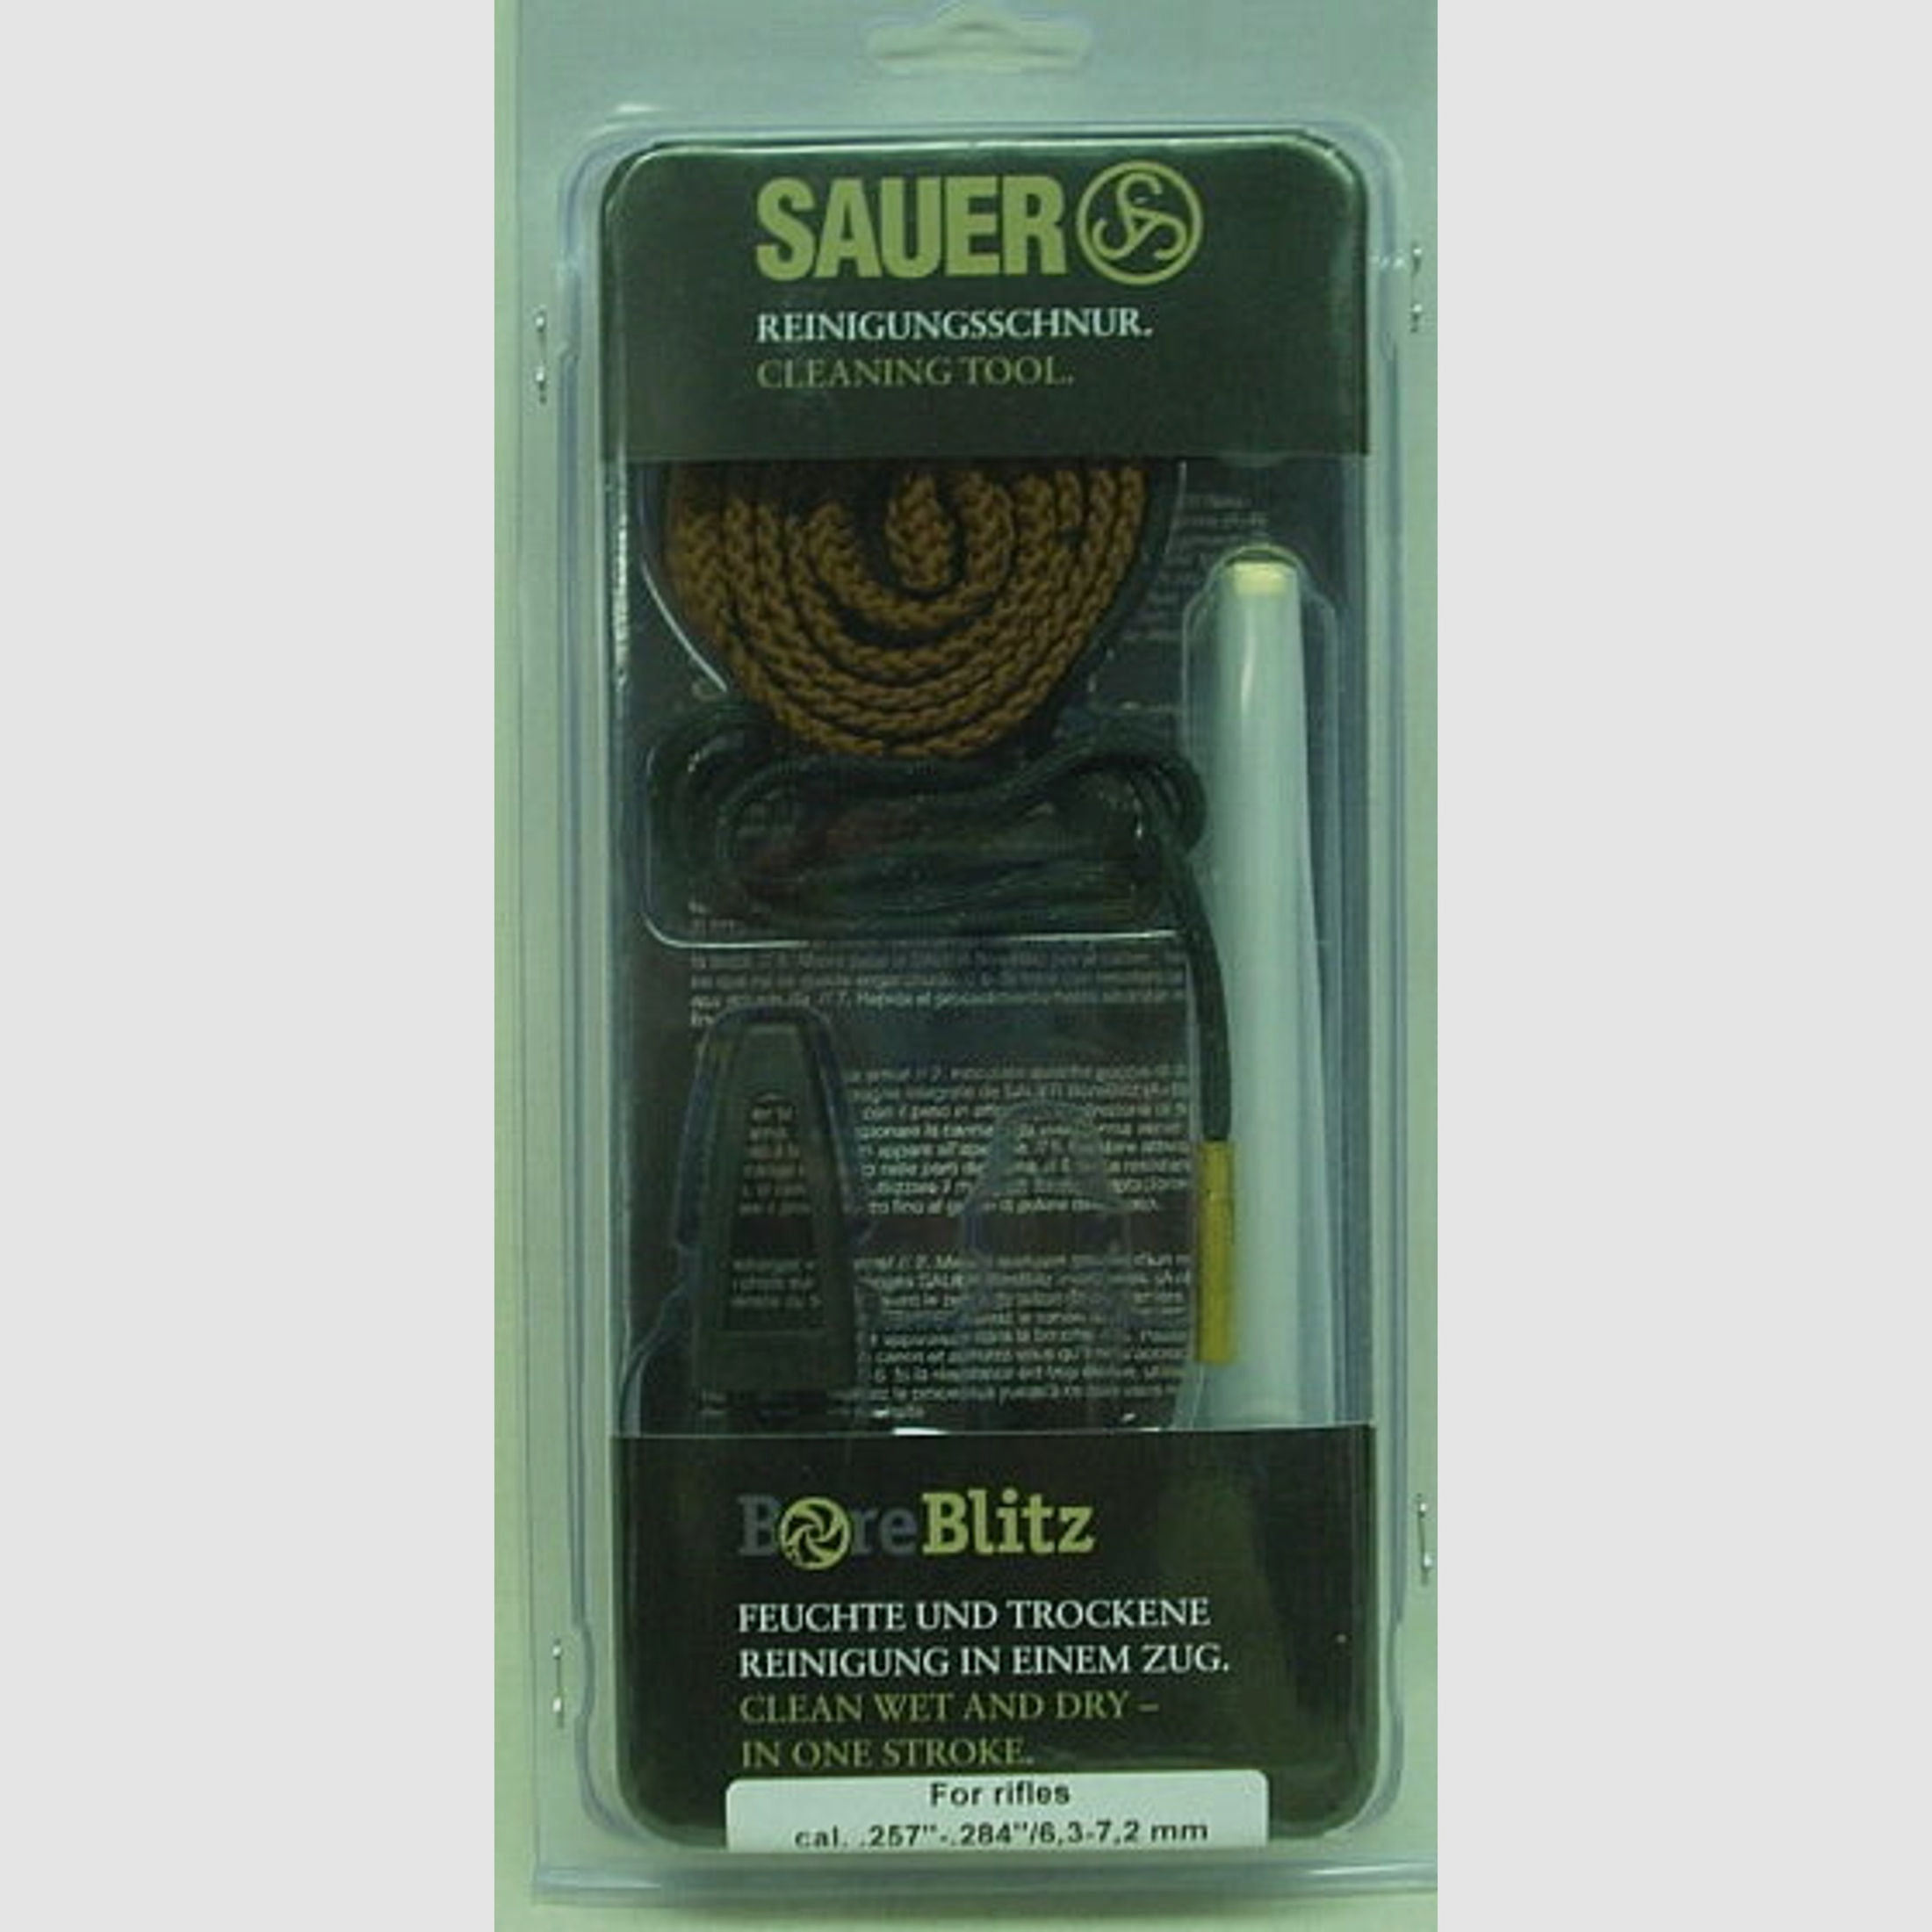 Sauer	 BoreBlitz 8,5-9,5mm .338Win.Mag.,9,3x62,357H&HMag